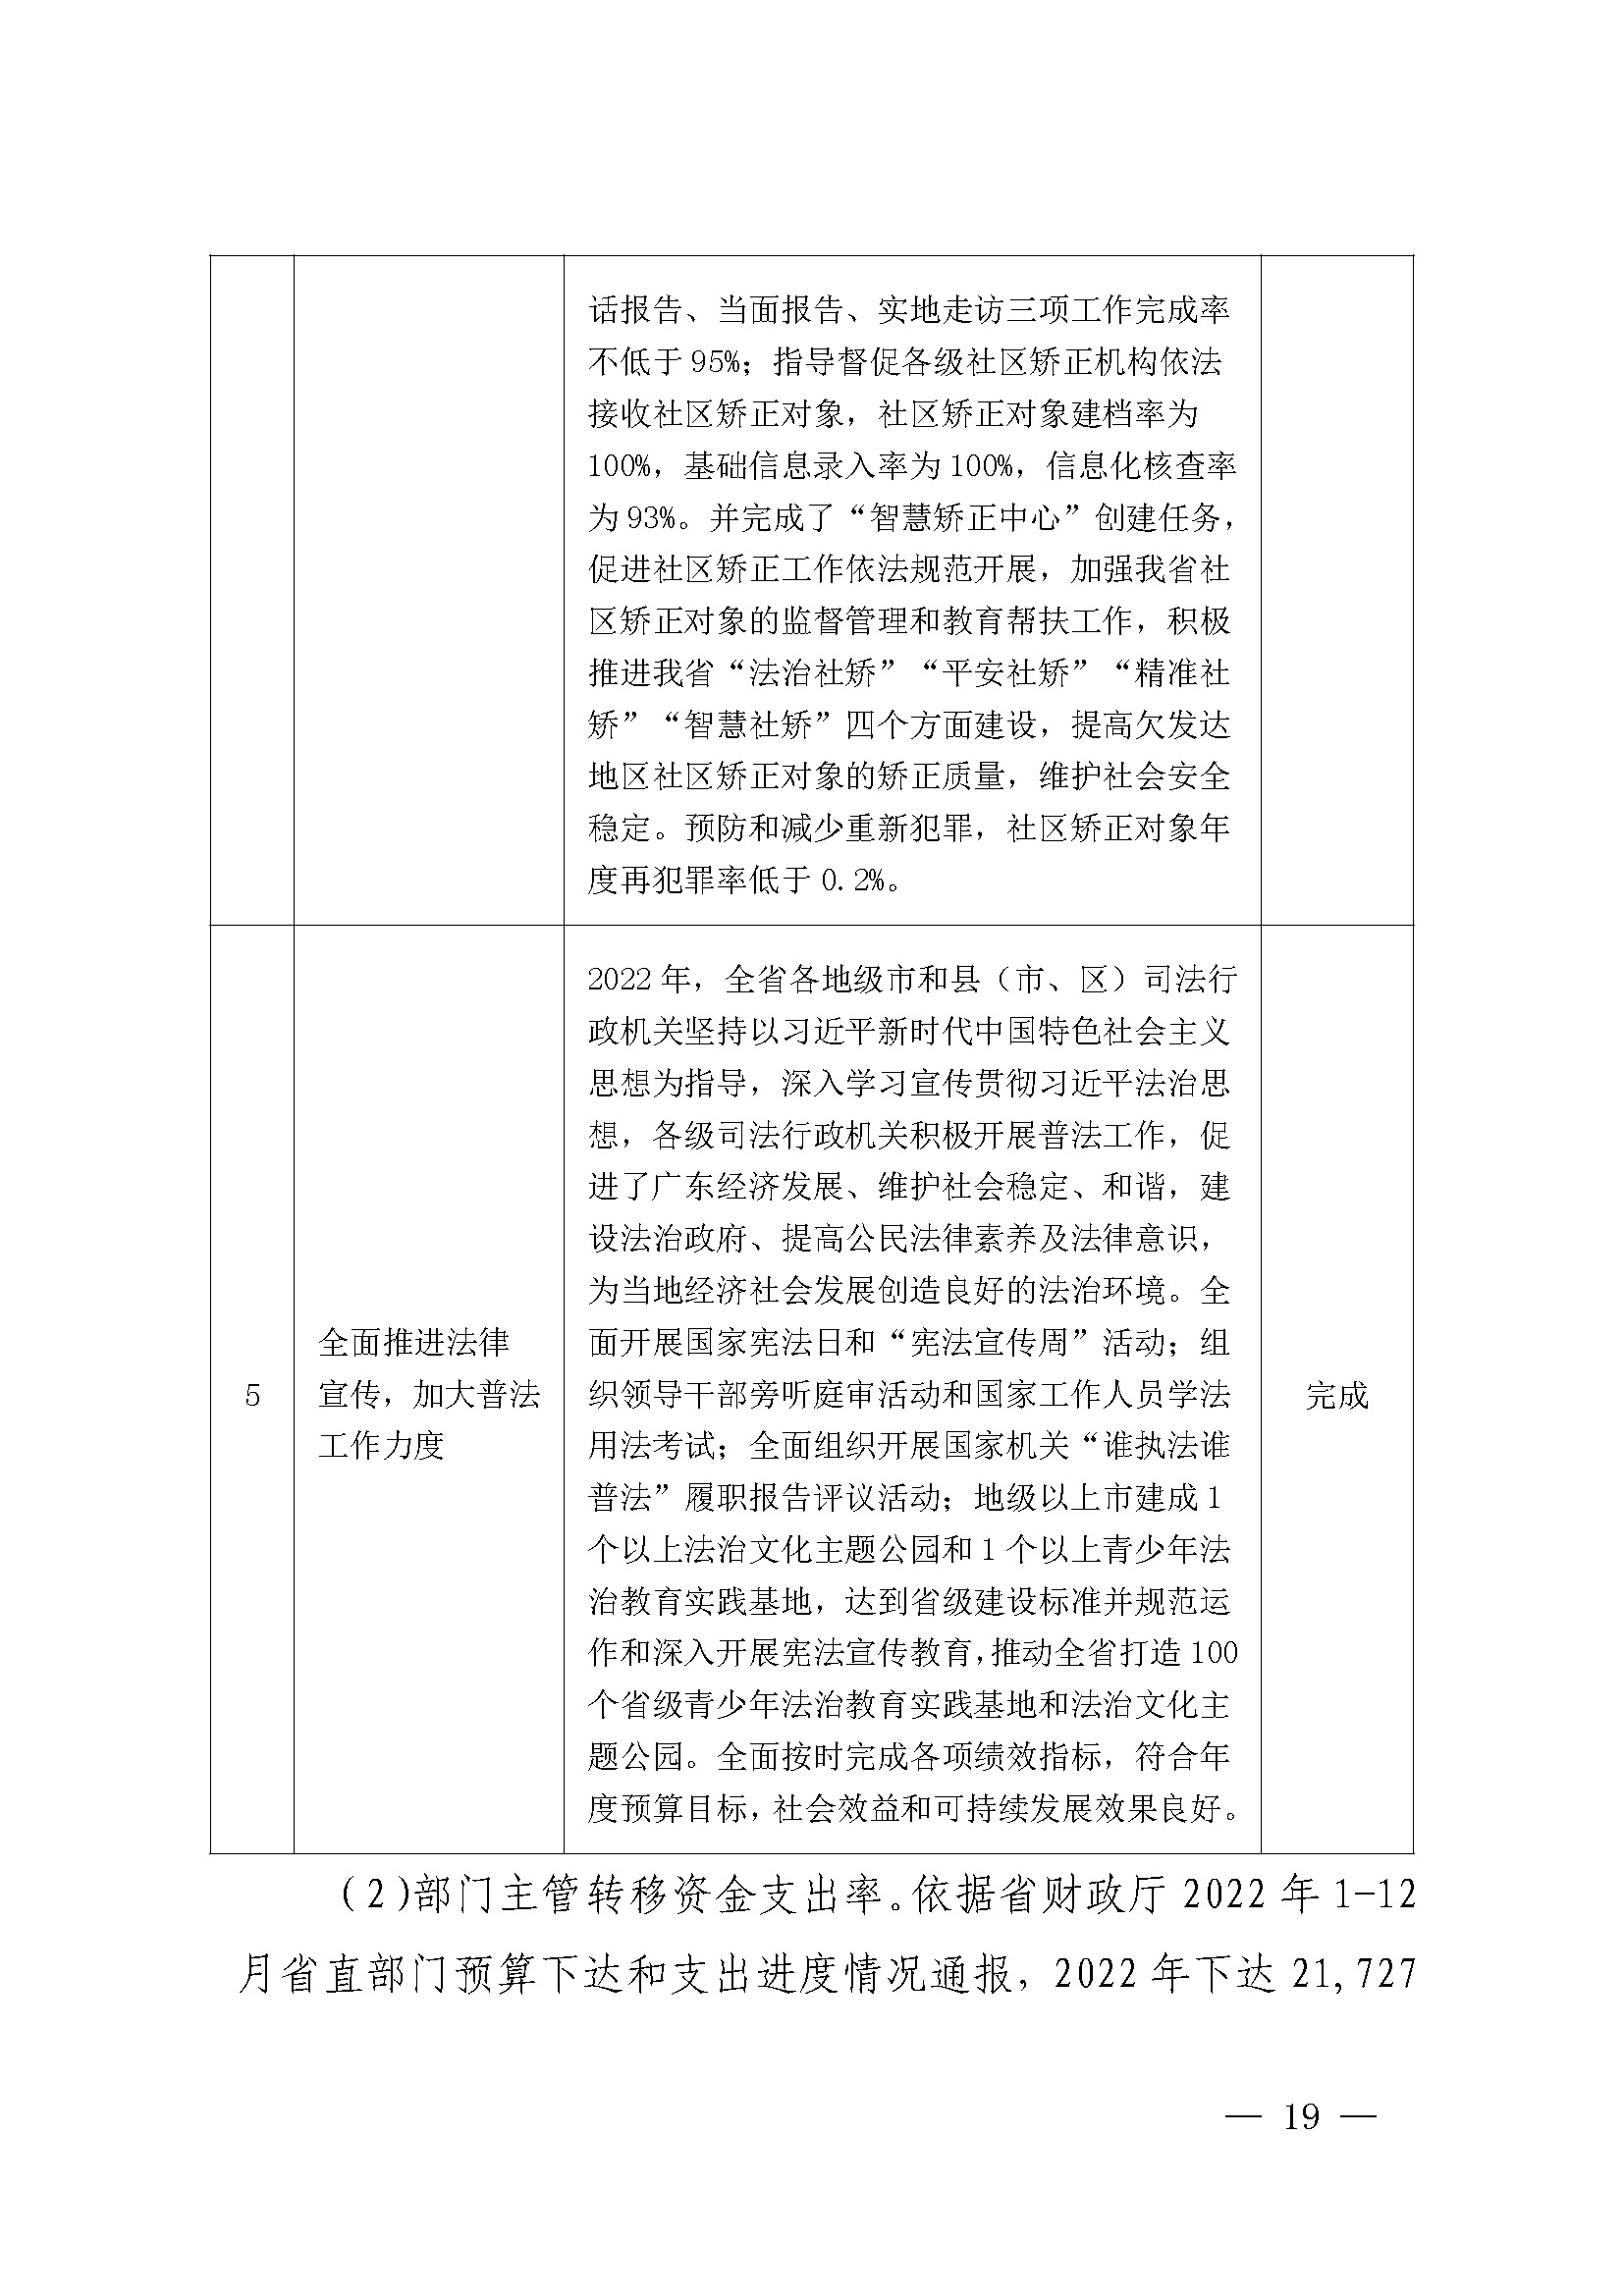 广东省司法厅2022年度部门整体支出绩效自评报告_页面_19.jpg